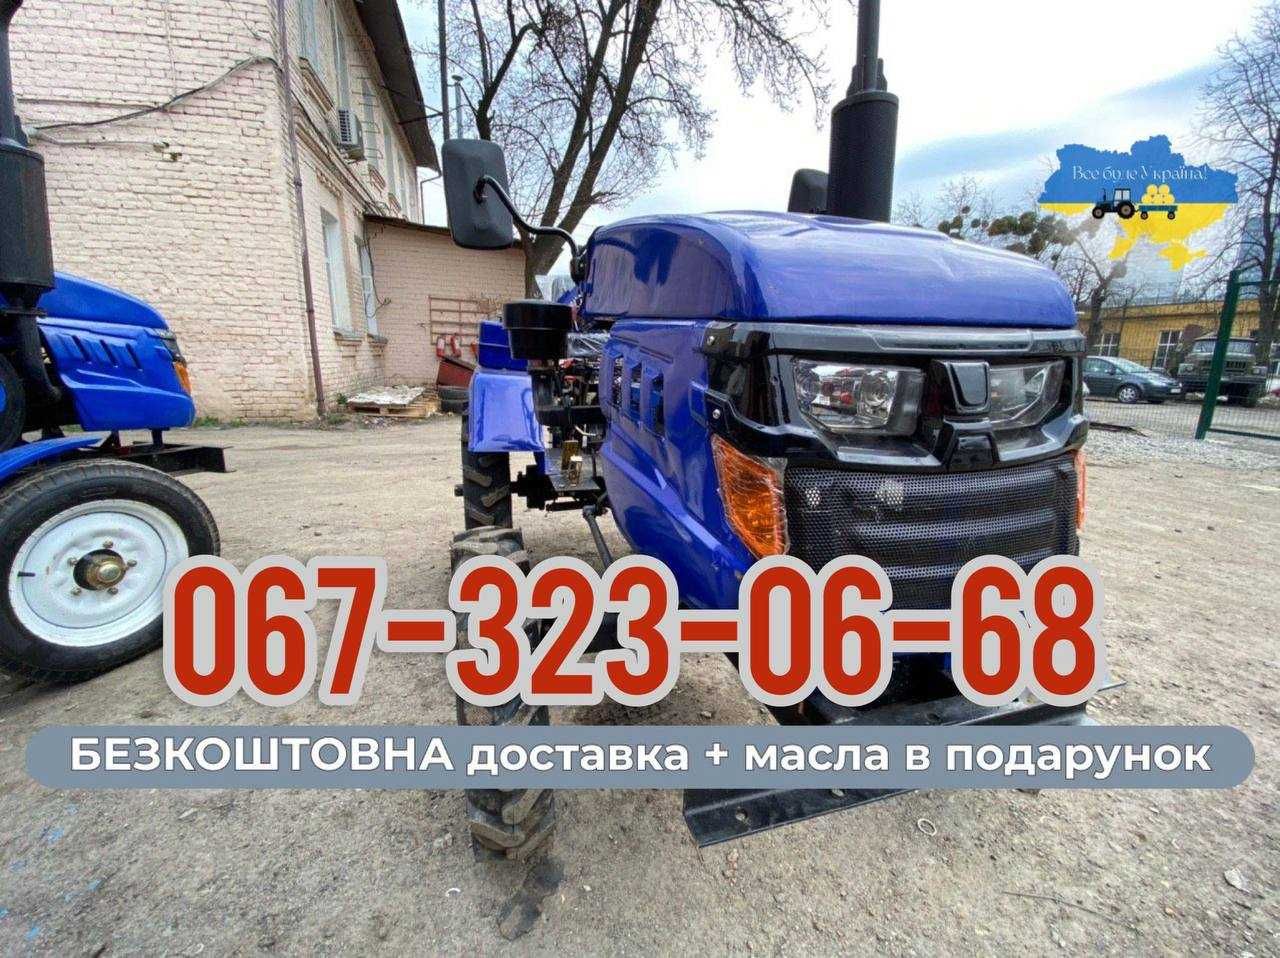 Мототрактор КЕНТАВР 160 В (В-9) 16 к.с. Безкоштовно доставляємо МАСЛА